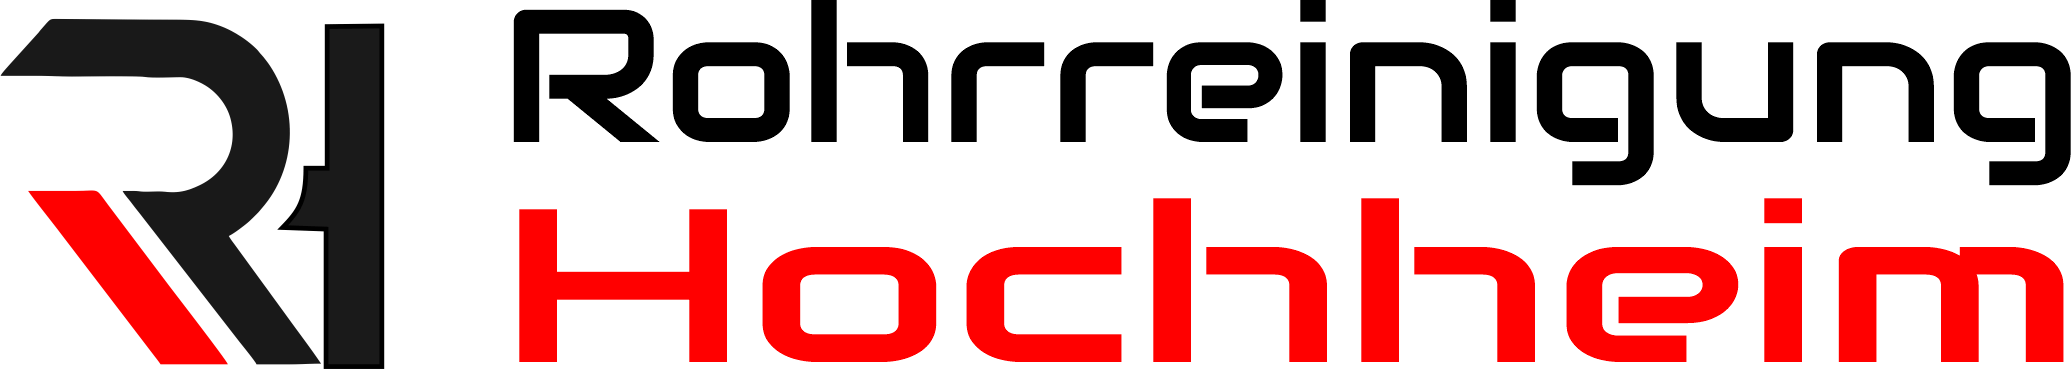 Rohrreinigung Hochheim Logo